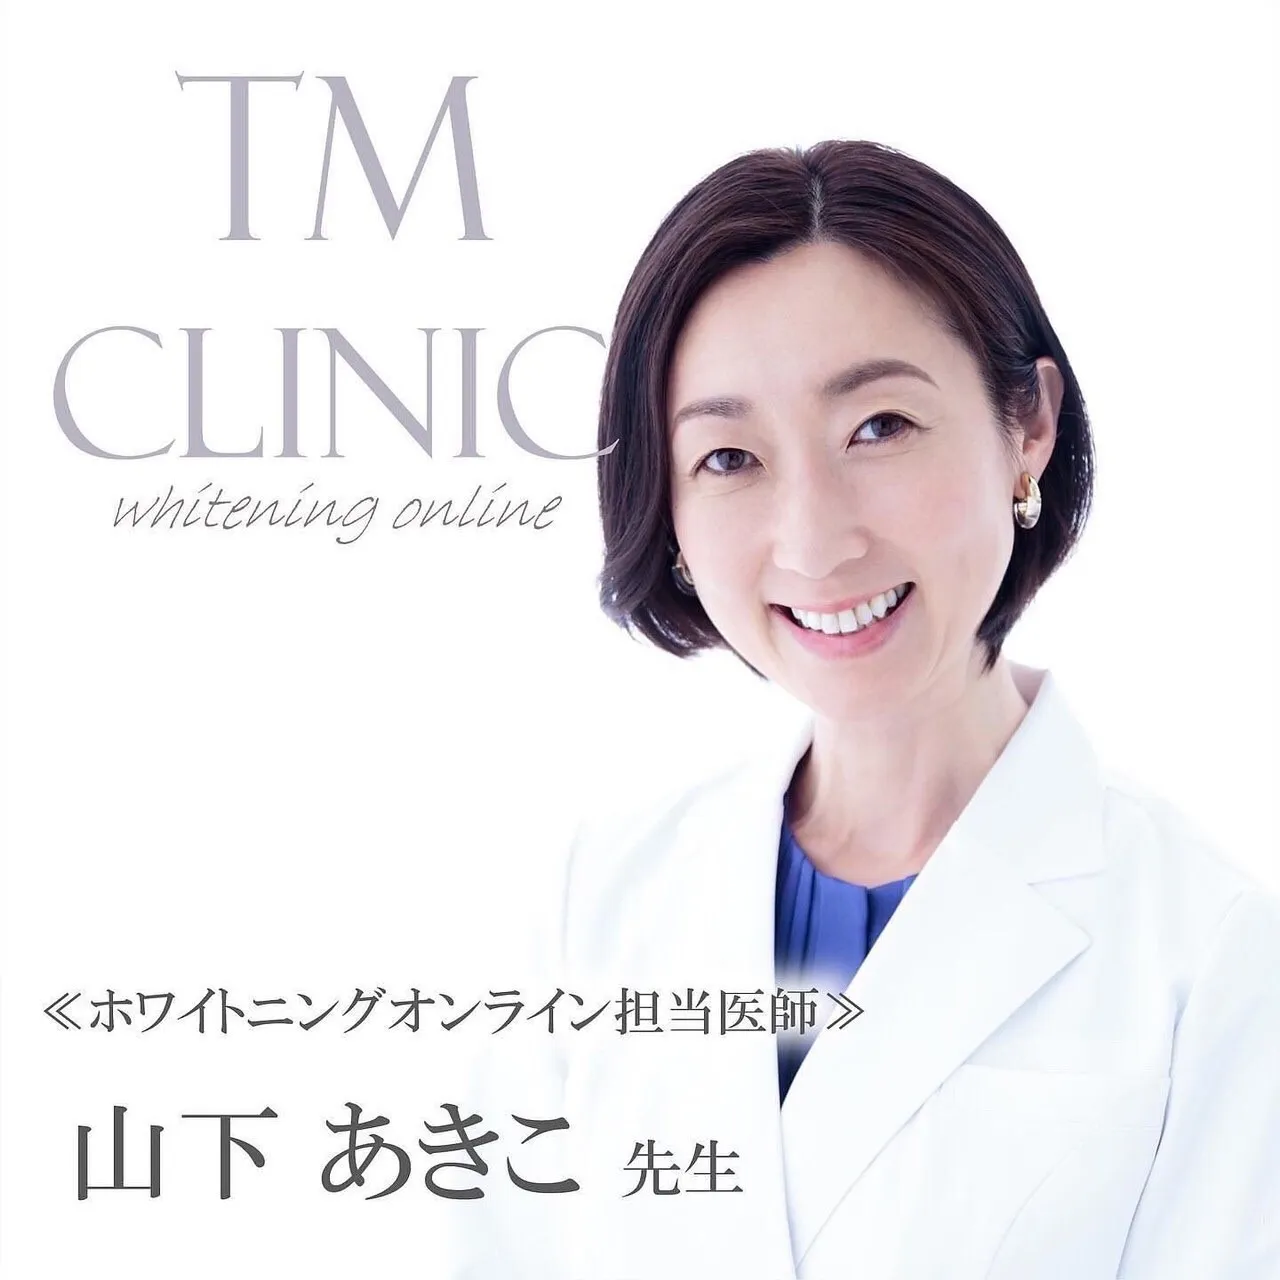 スマイルティース 歯科医師が運営する歯科情報サイトにSHINEが掲載されました|豊橋市にあるエステサロンSHINE Beauty Salon